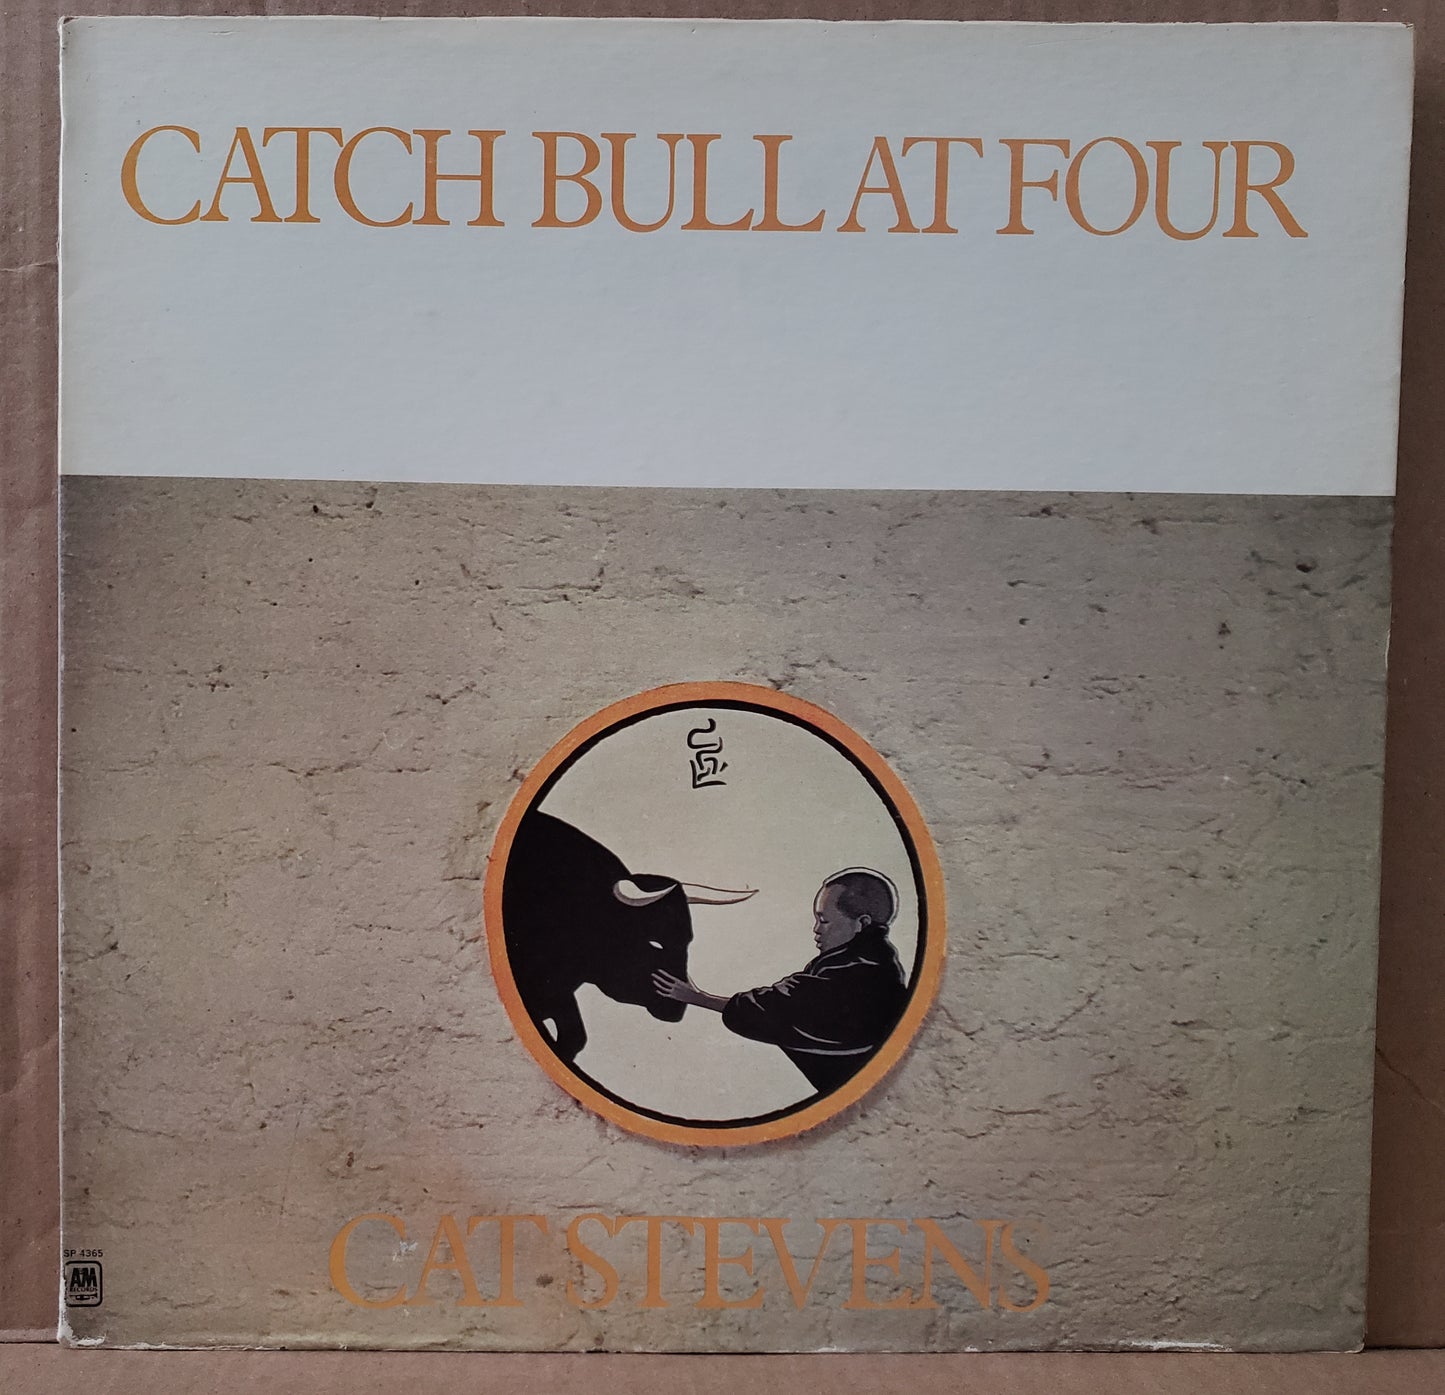 Cat Stevens - Catch Bull at Four [1972 Gatefold] [Used Vinyl Record LP]